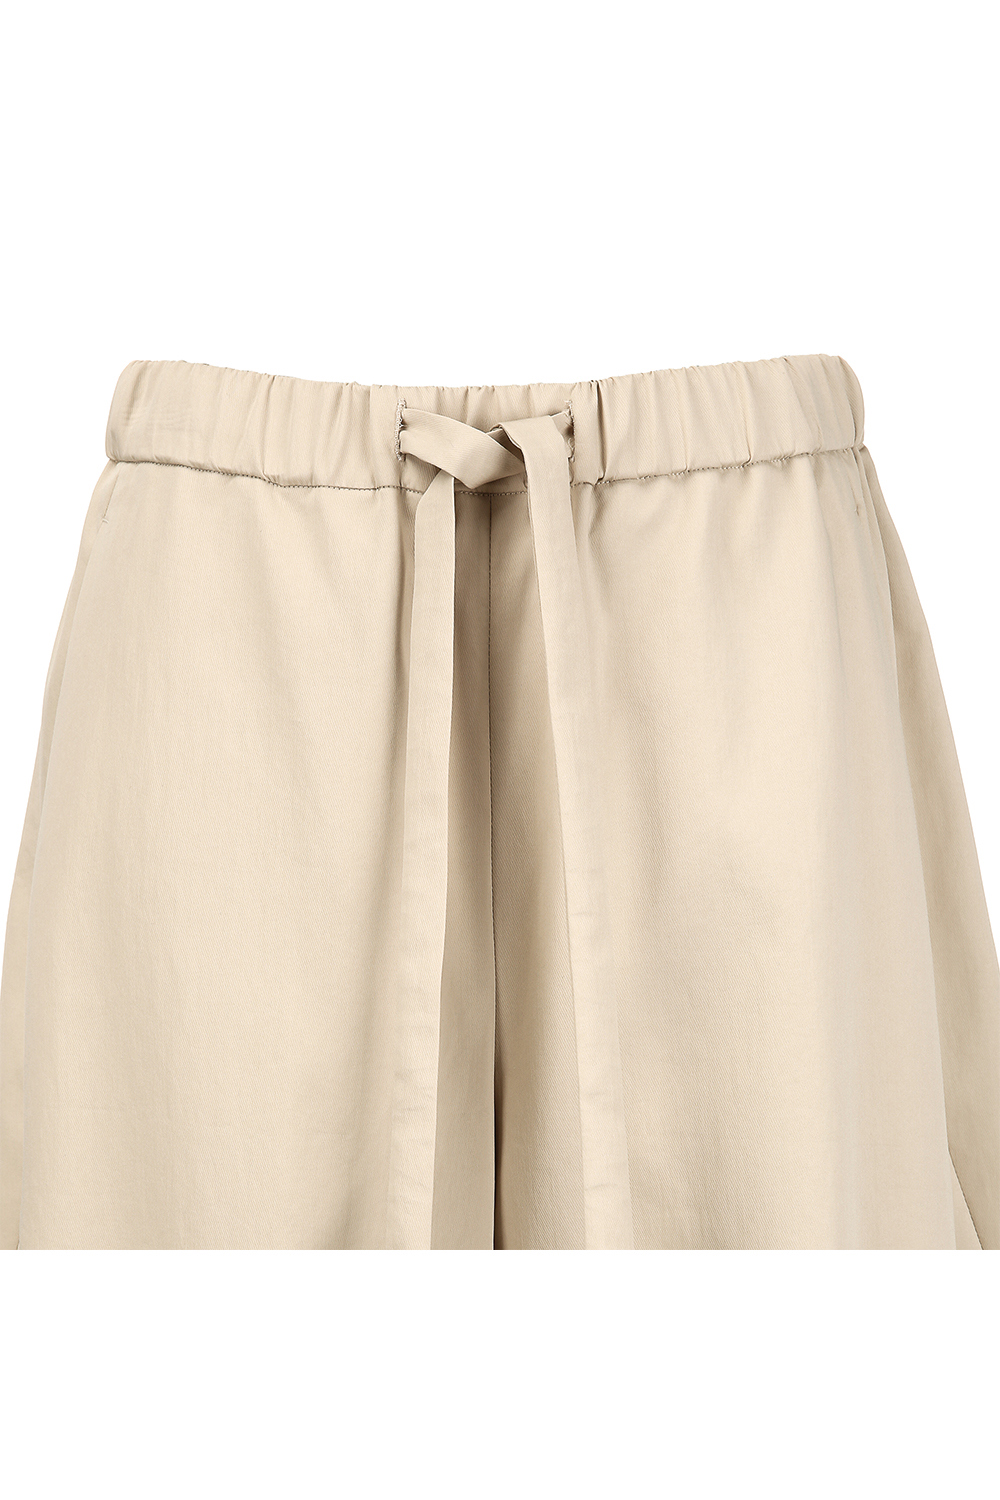 Pants cream color image-S1L36